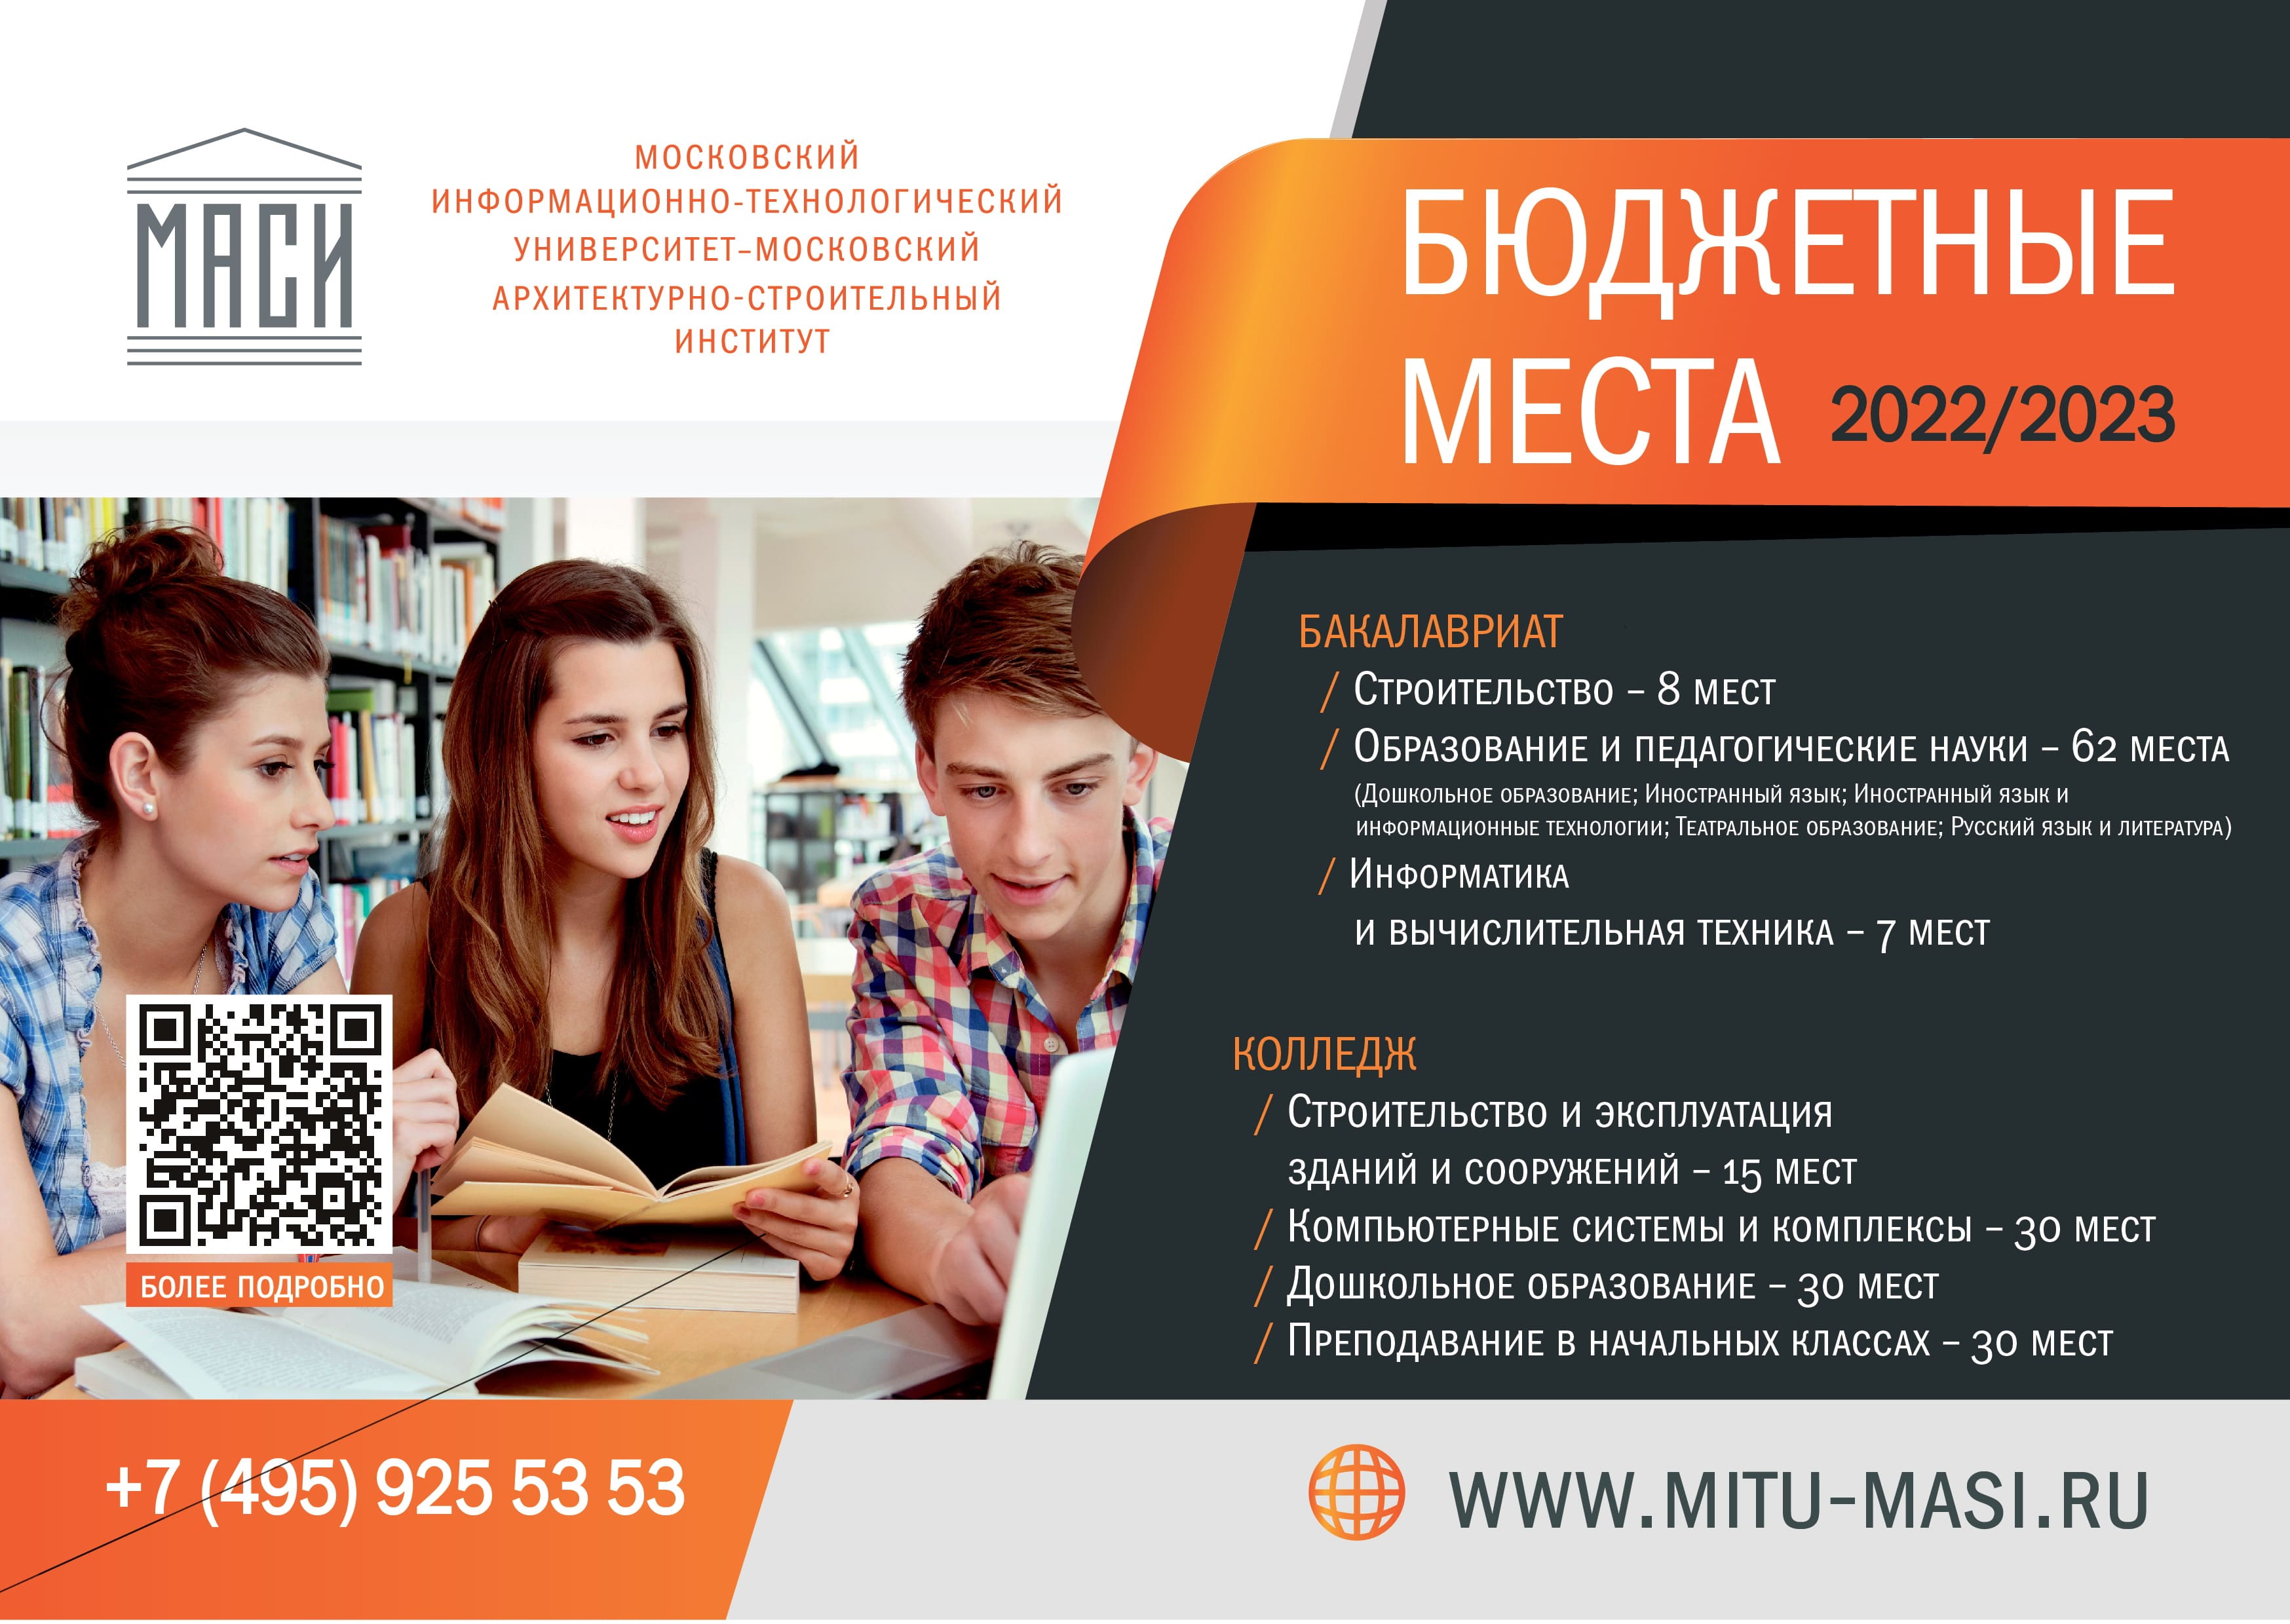 Московский информационно-технический университет (МАСИ, МГЛИ, МУГУ) - МИТУ-МАСИ: бюджетные места 2022/2023